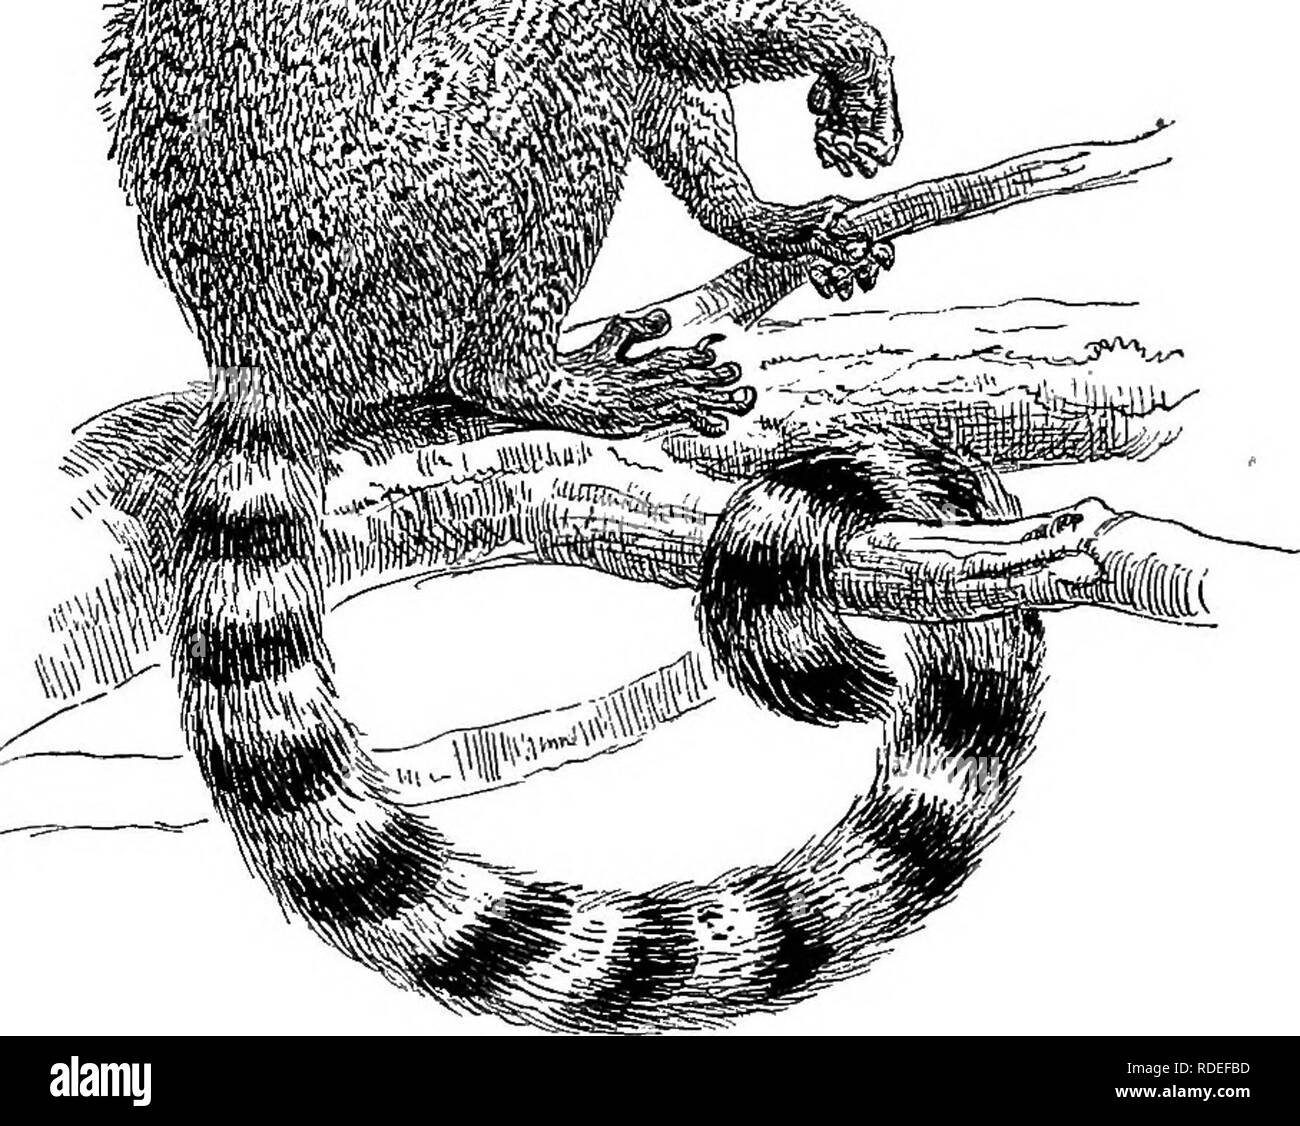 Amerikanische Tierarten leben. Zoologie; das Verhalten der Tiere. Die  anderen Tiere 339, zusammen mit ihren mehr oder weniger entfernten  Verwandten) als "lemuroids" reservieren das Wort Lemuren für die Tiere die  meisten